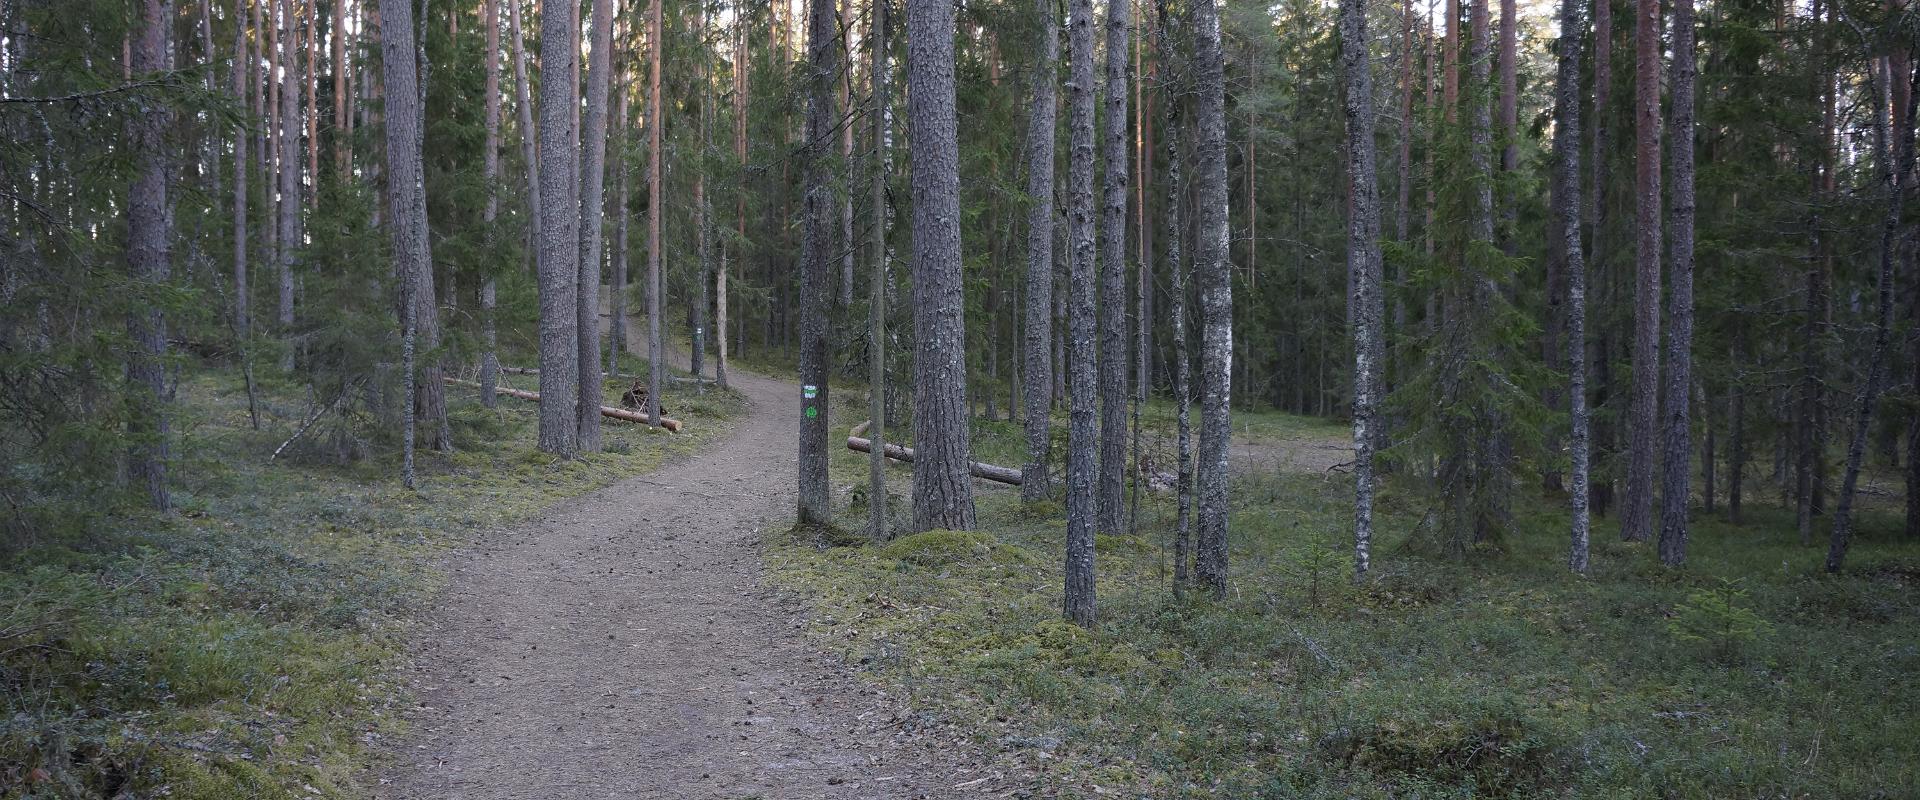 RMK Taevaskoja–Otteni–Taevaskoja hiking trail